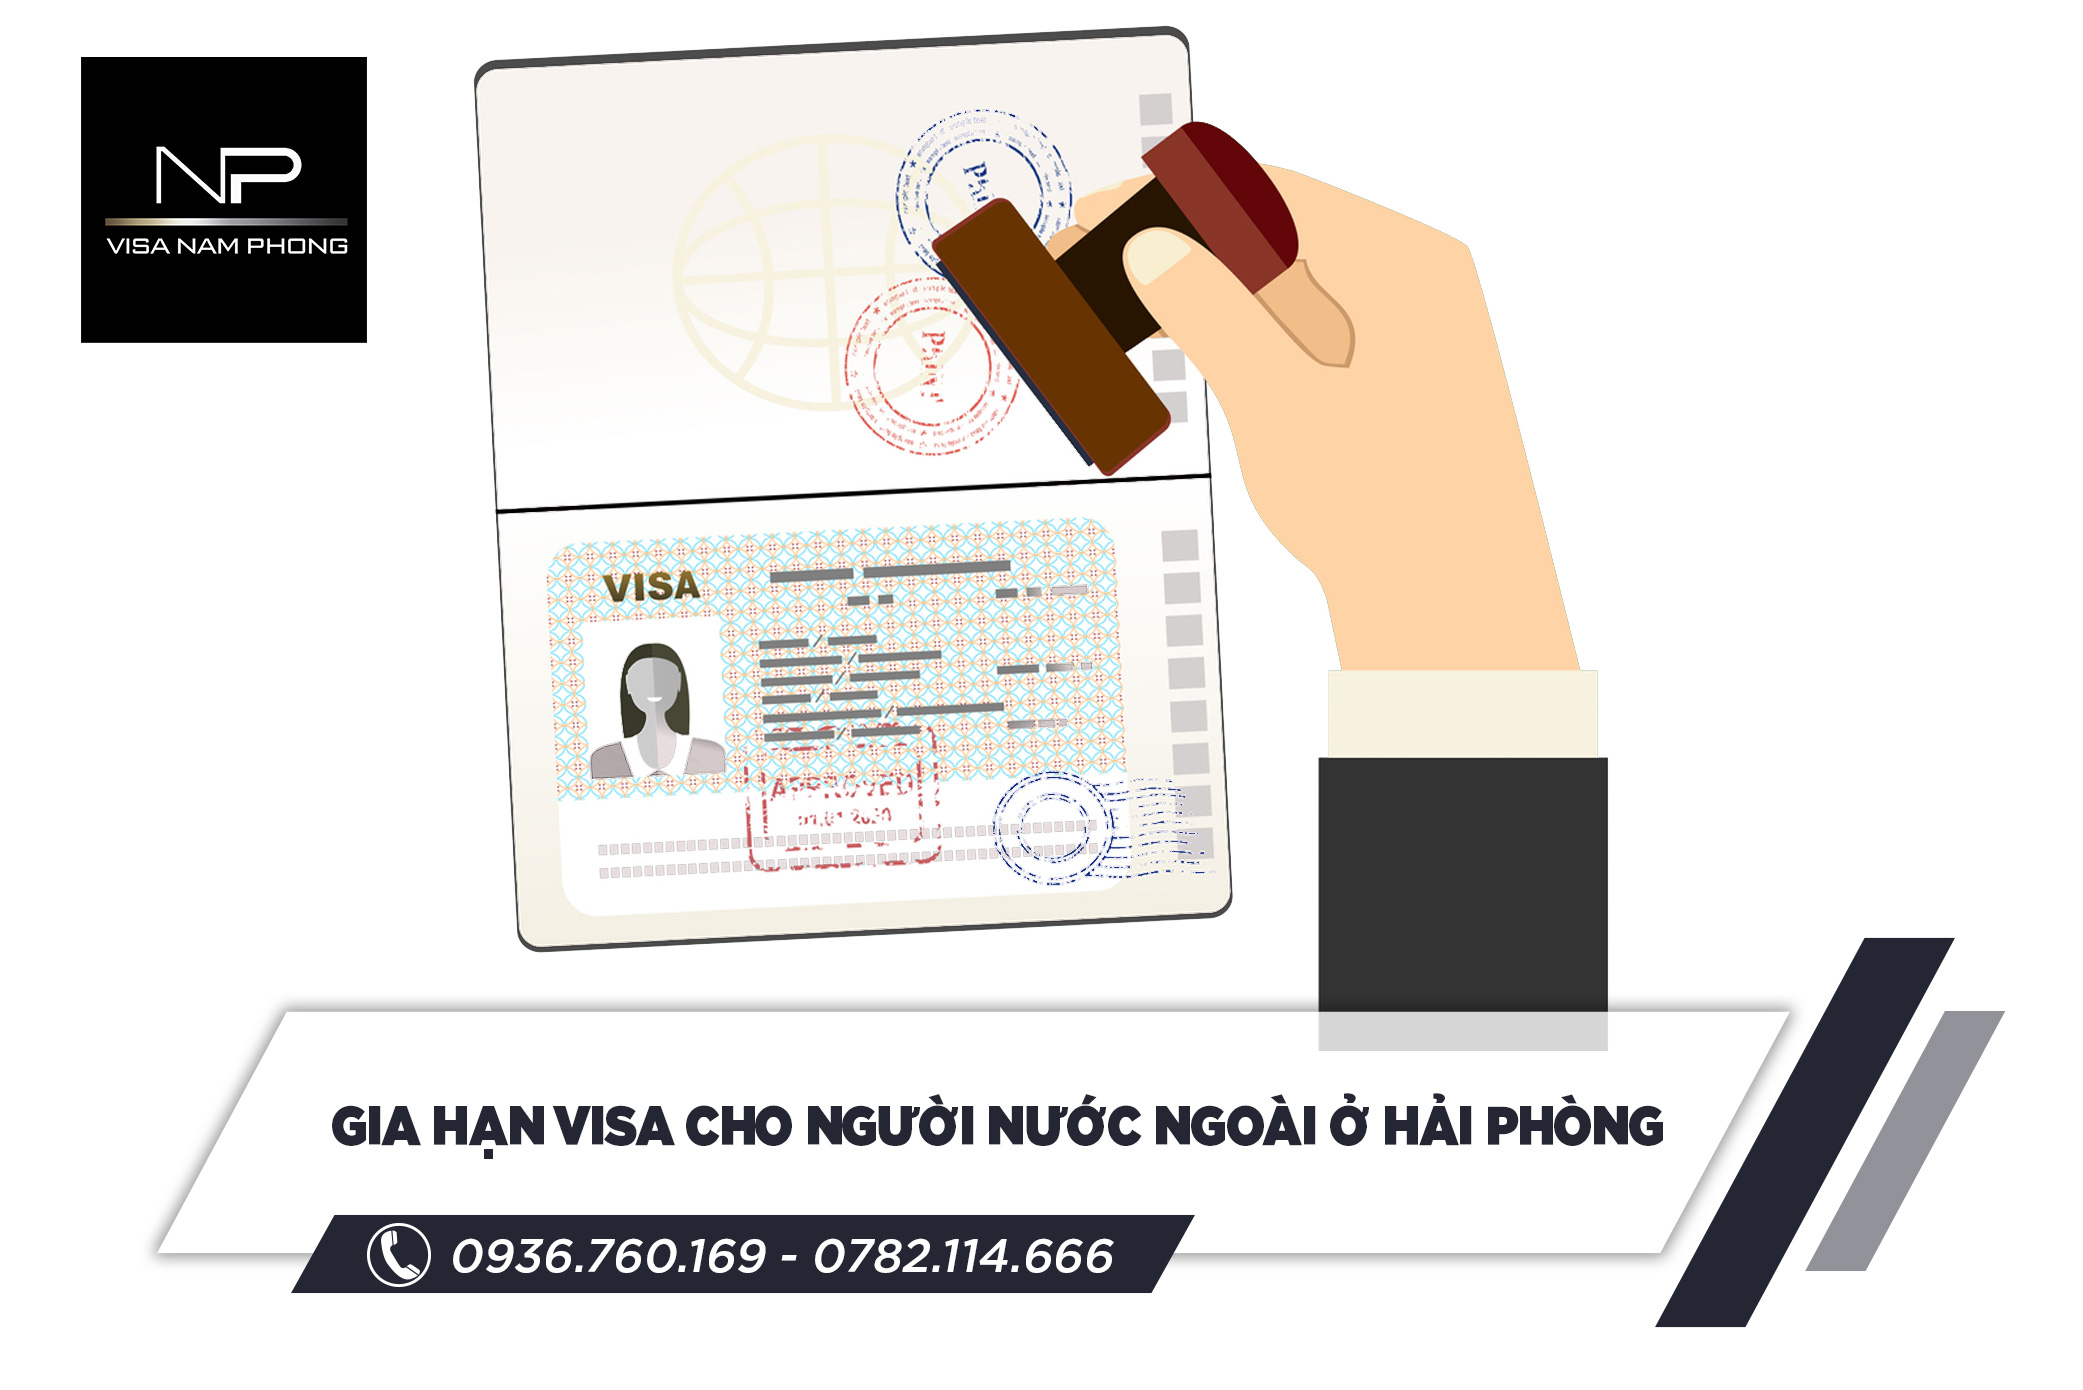 Gia hạn visa cho người nước ngoài ở Hải Phòng